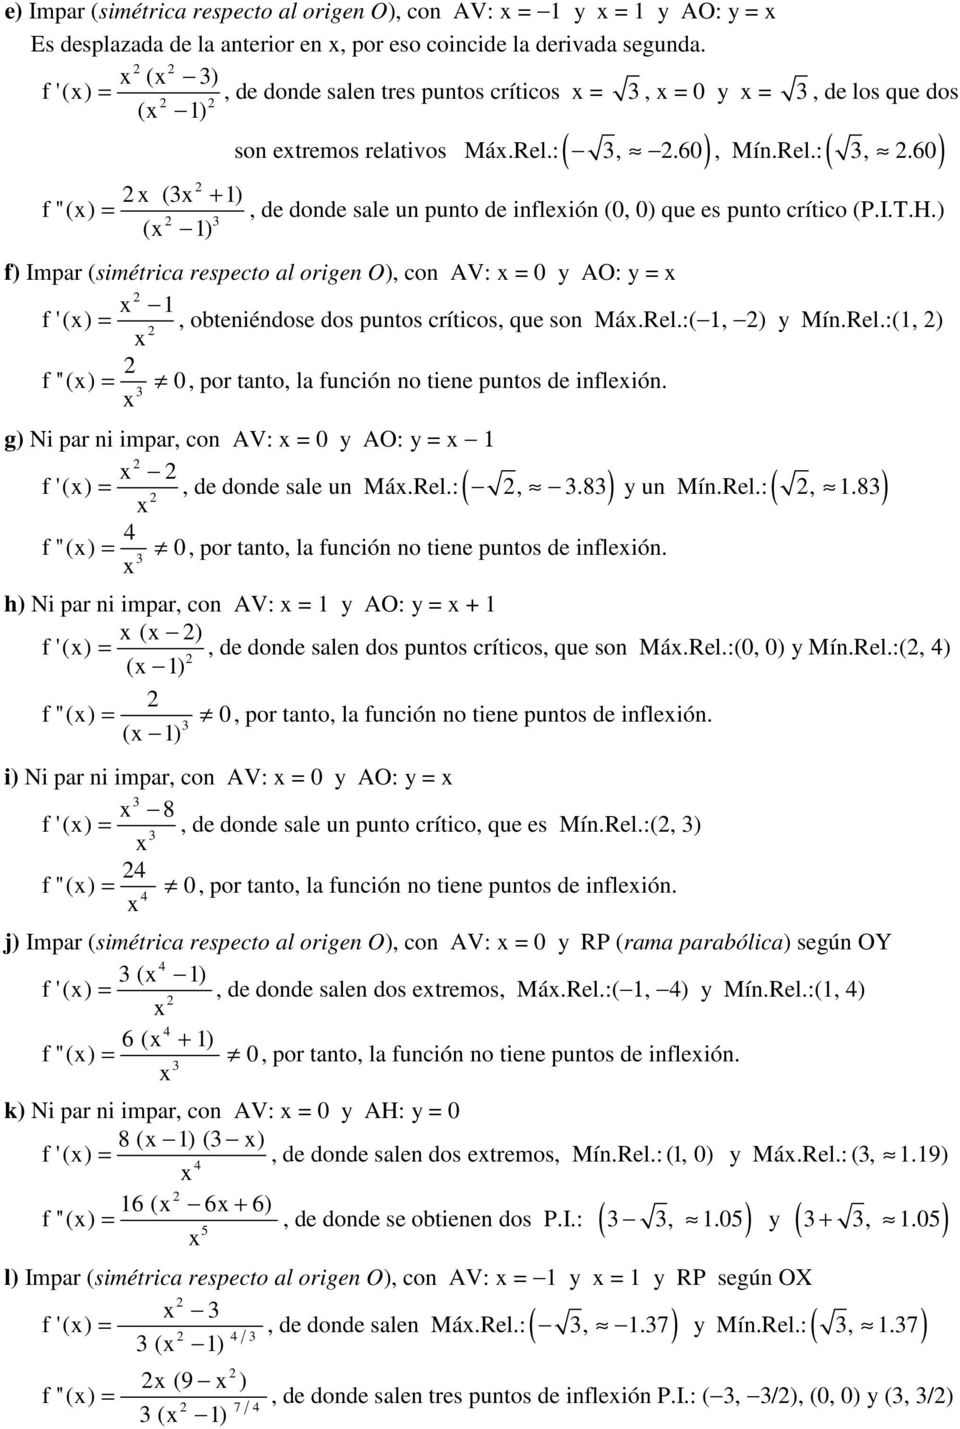 I.T.H.) f) Impar (simétrica respecto al origen O), con AV: 0 y AO: y f '(), obteniéndose dos puntos críticos, que son Má.Rel.:(, ) y Mín.Rel.:(, ) f ''() 0, por tanto, la función no tiene puntos de infleión.